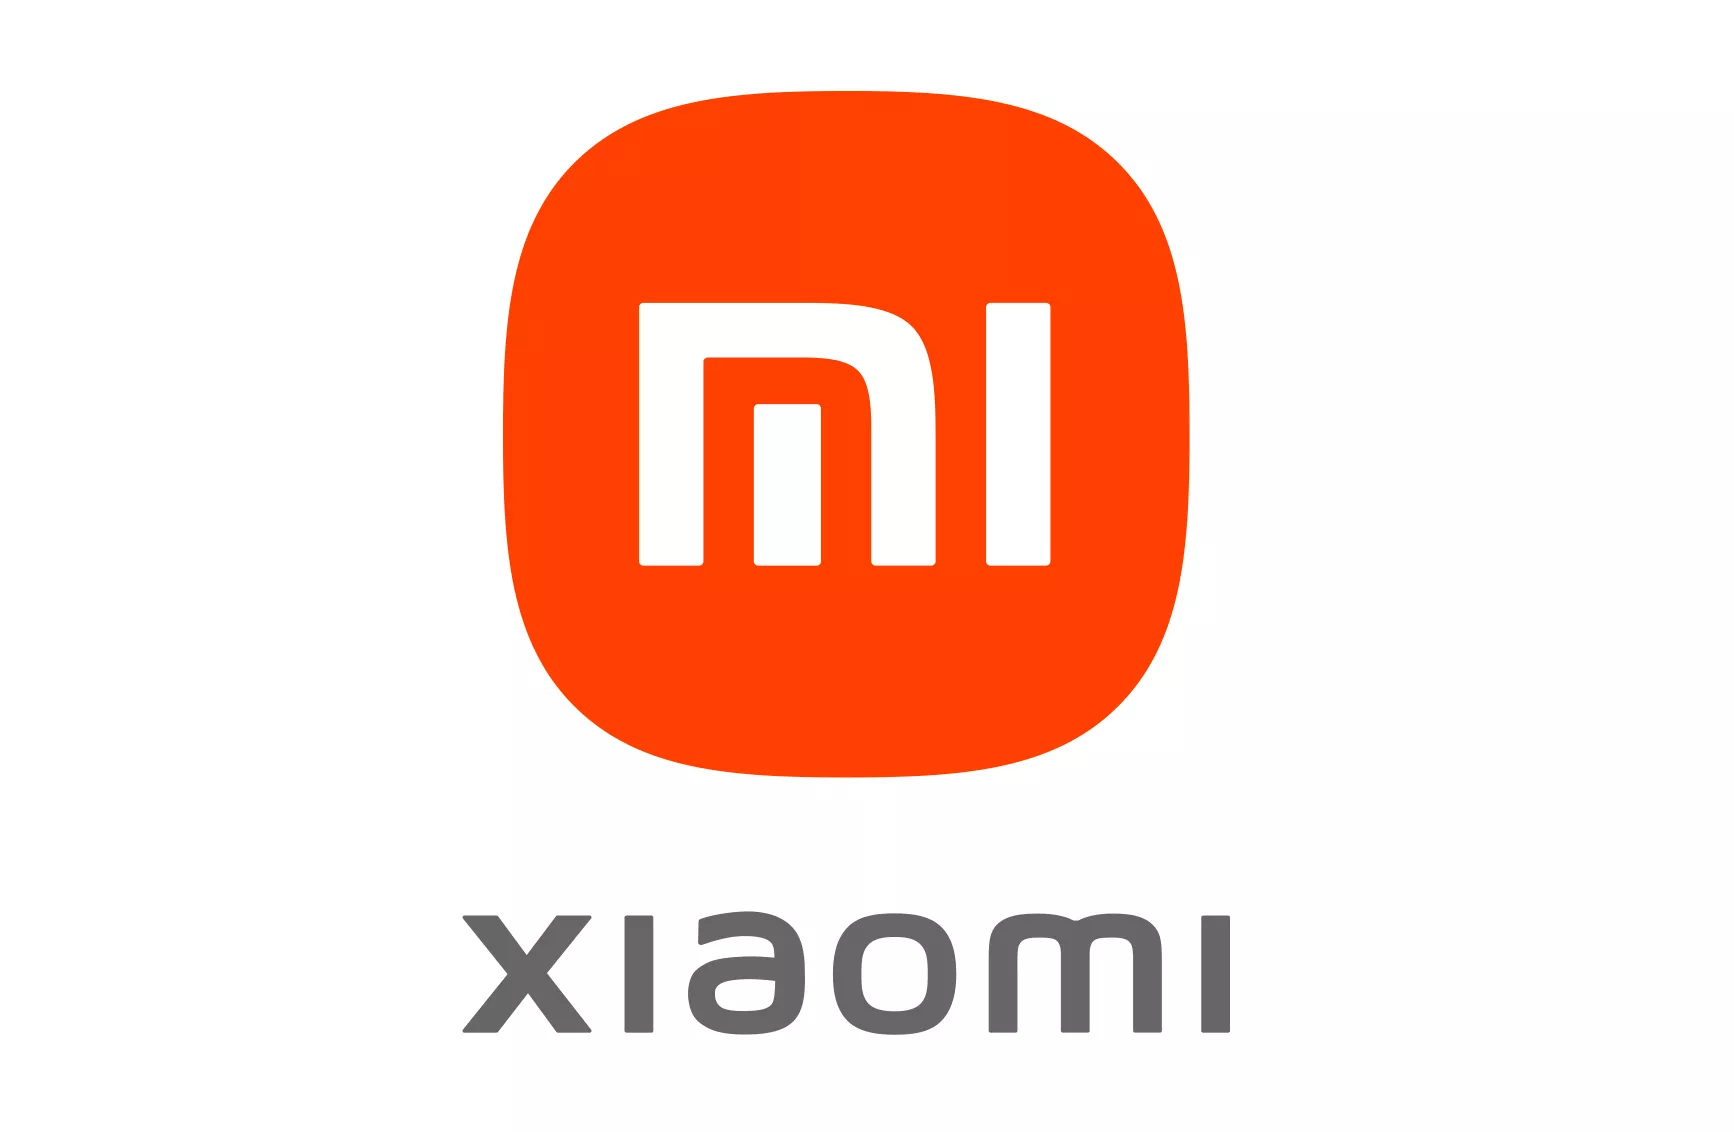 Agosto es el mes de Xiaomi, estamos a la espera de nuevos dispositivos